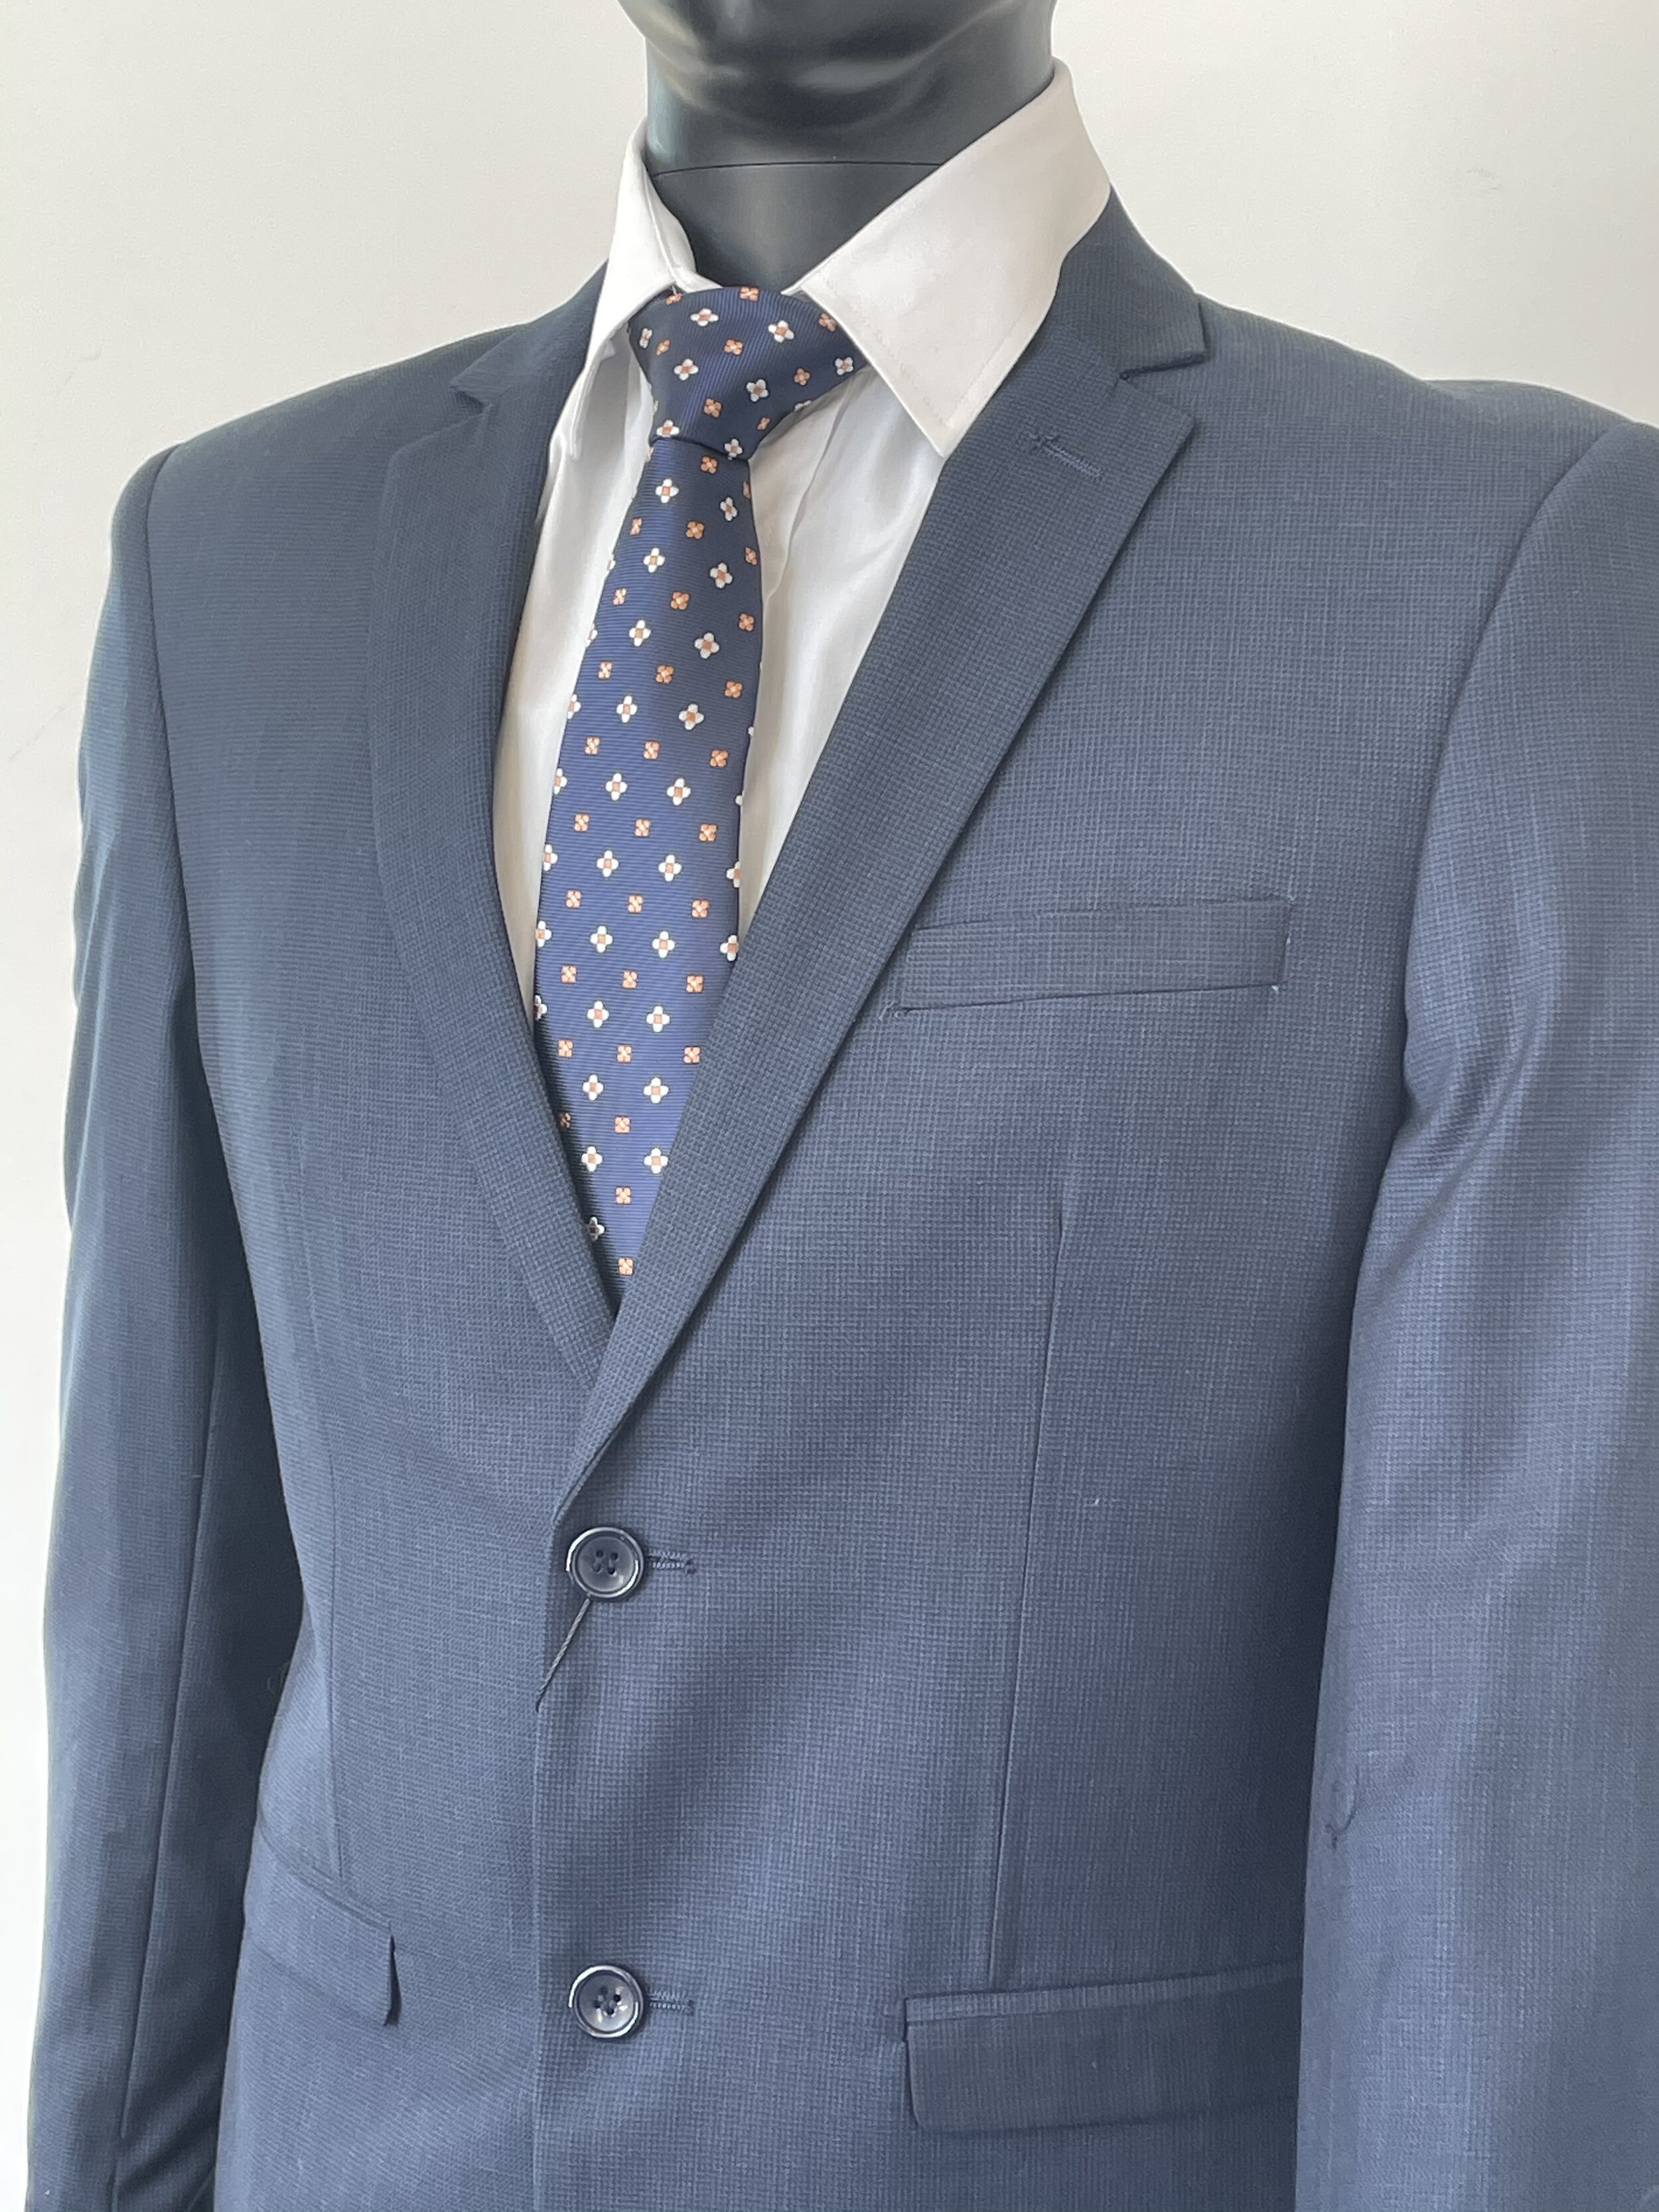 Gallery — Formal Wear 2 Suit U